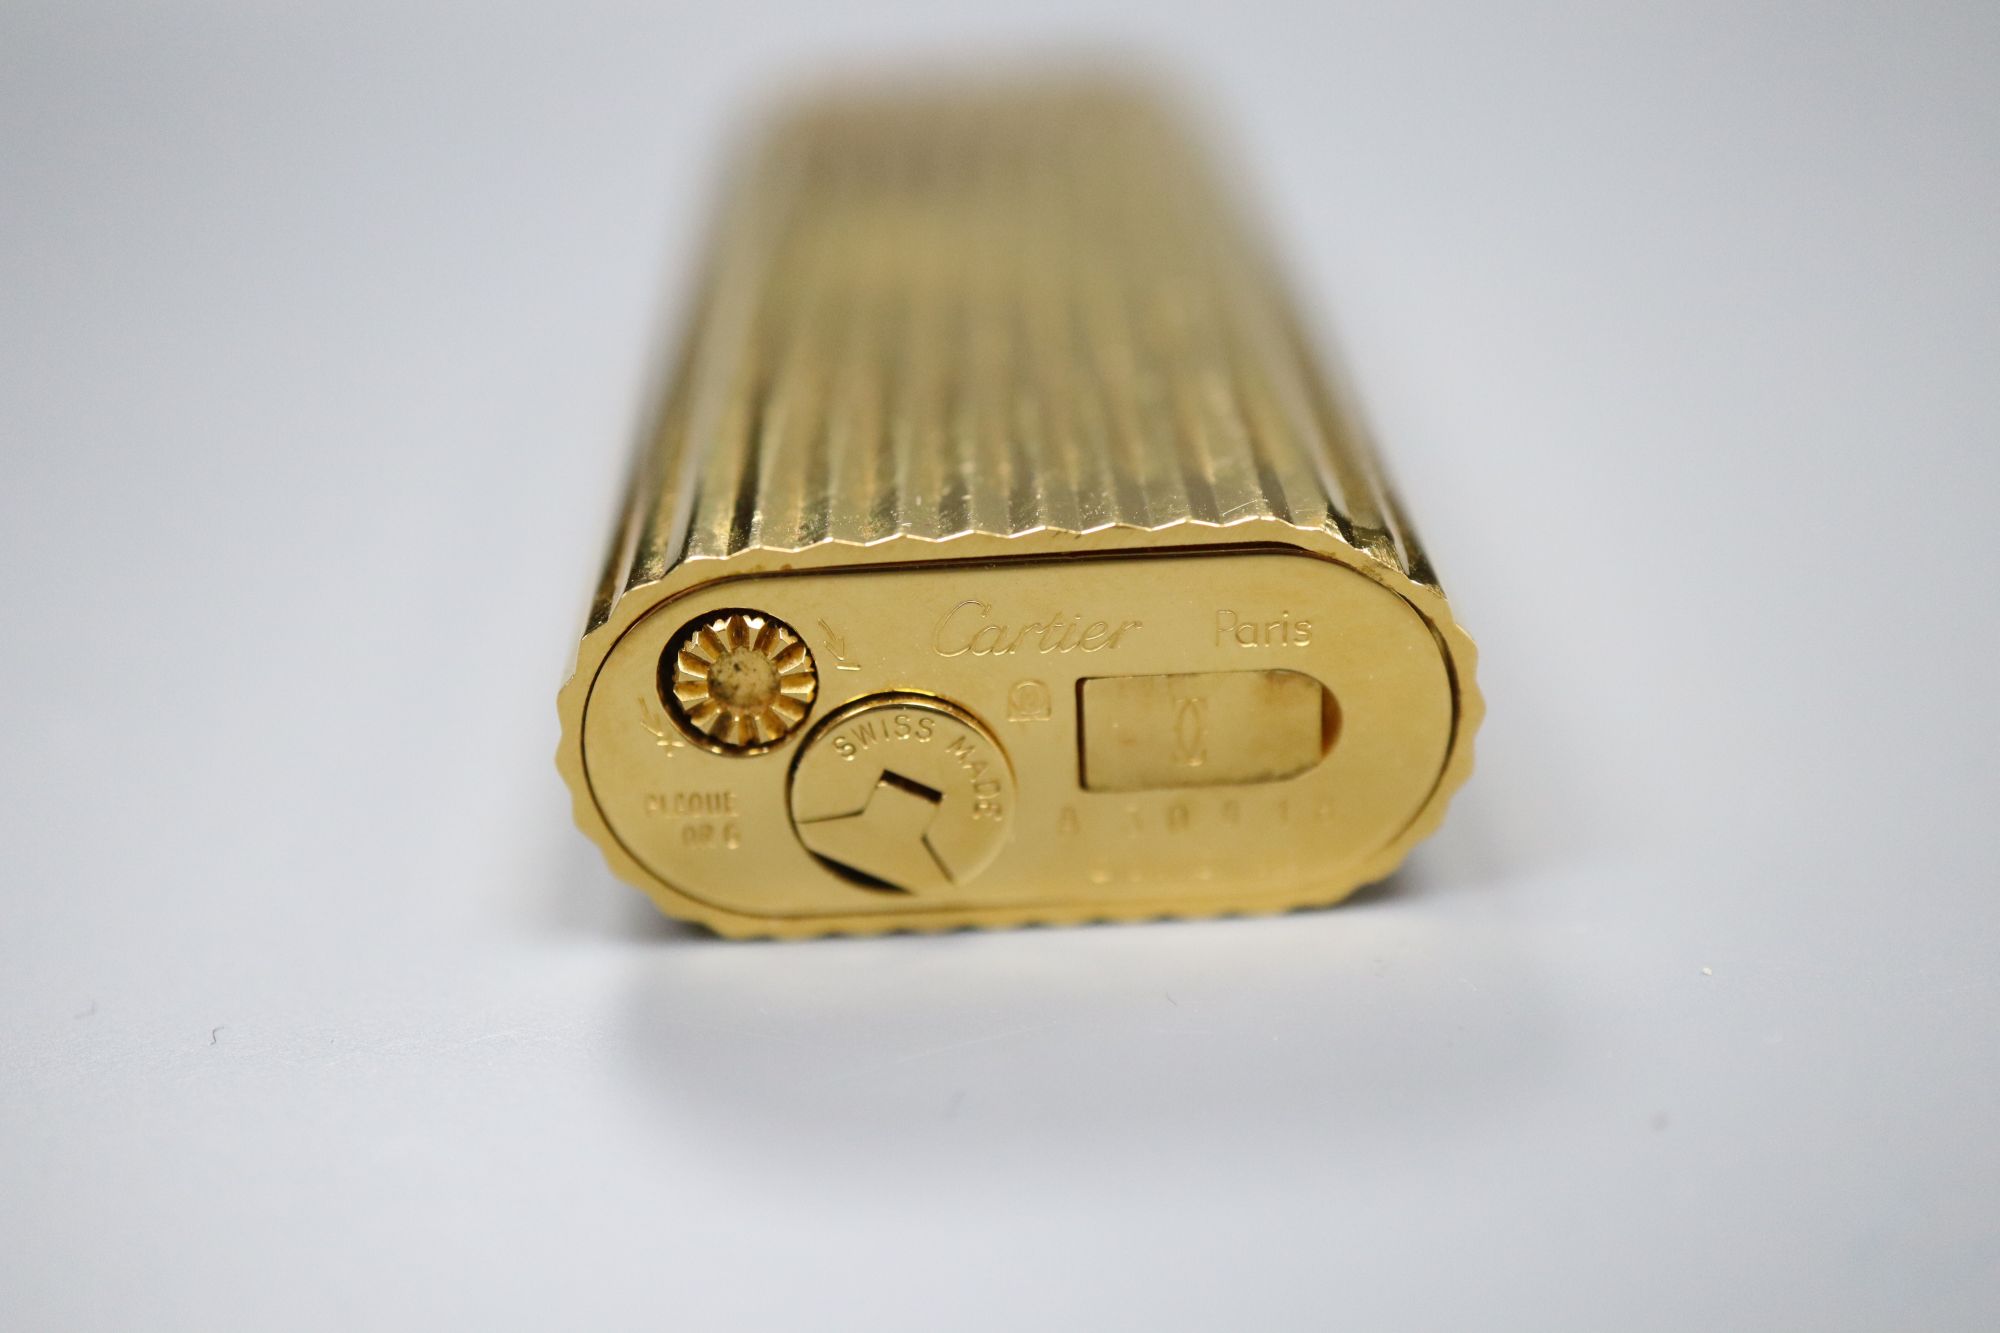 A cased Must de Cartier gold plated lighter